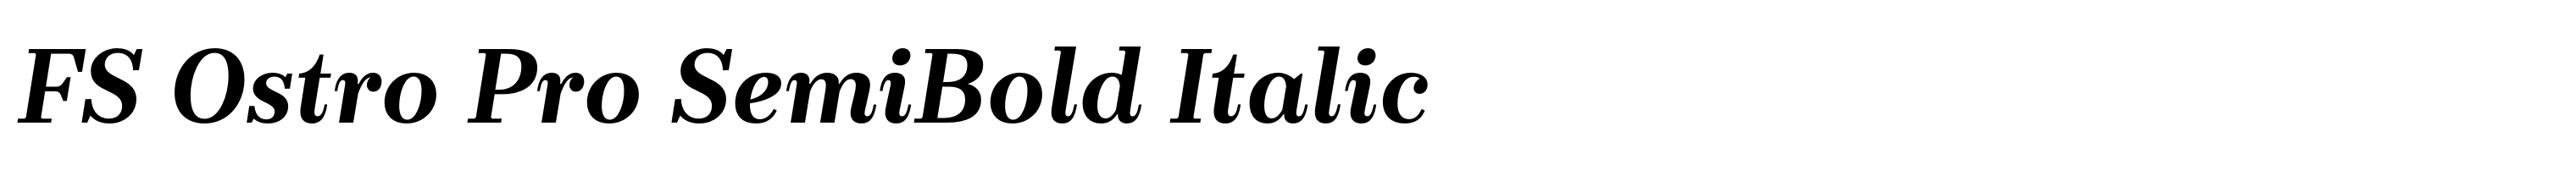 FS Ostro Pro SemiBold Italic